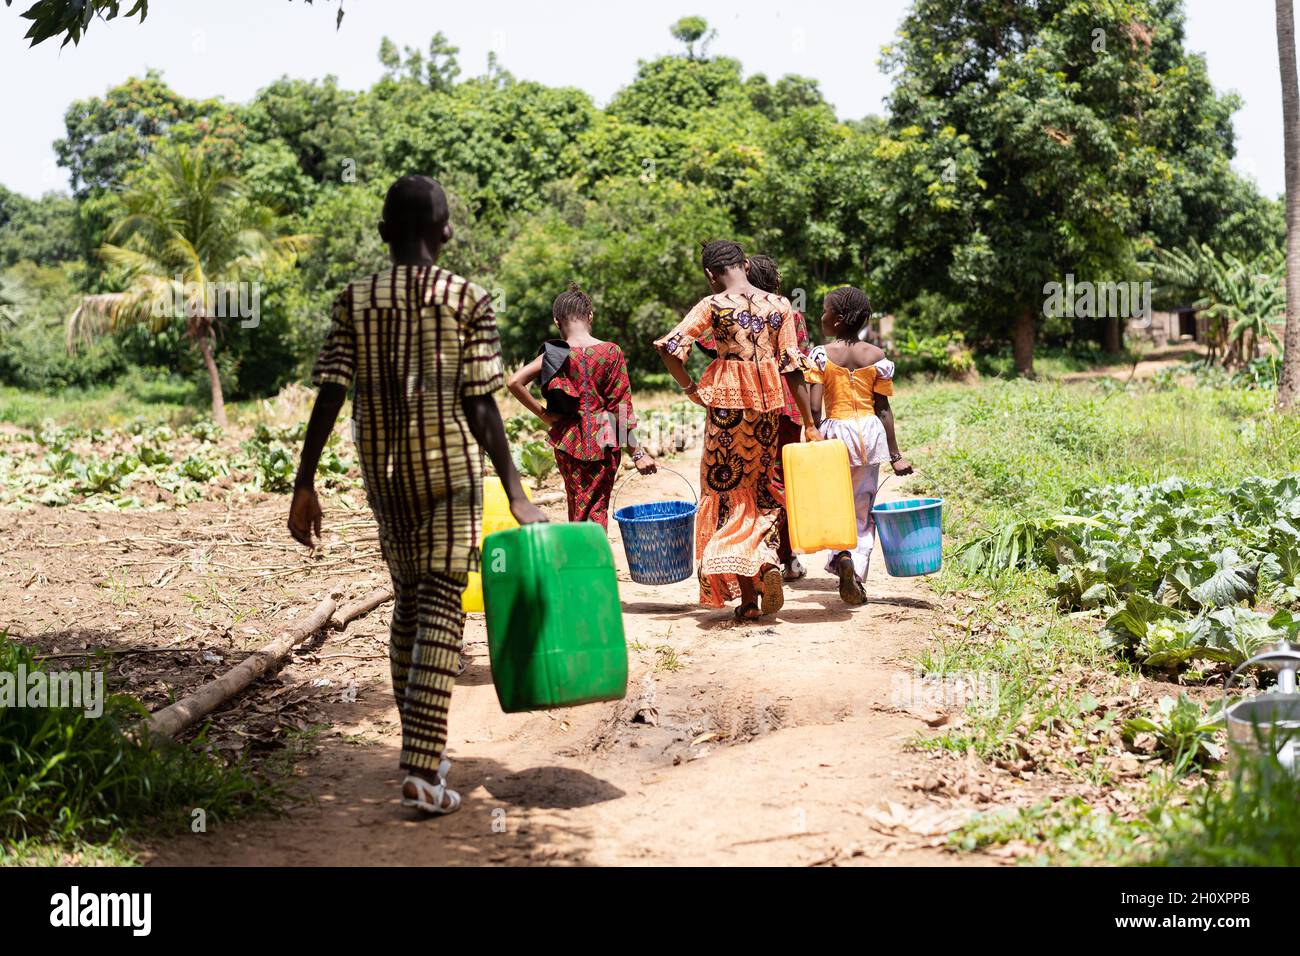 Groupe d'enfants noirs d'âge scolaire africains fatigués, occupés à transporter de l'eau d'avant en arrière du village bien; concept de travail des enfants Banque D'Images